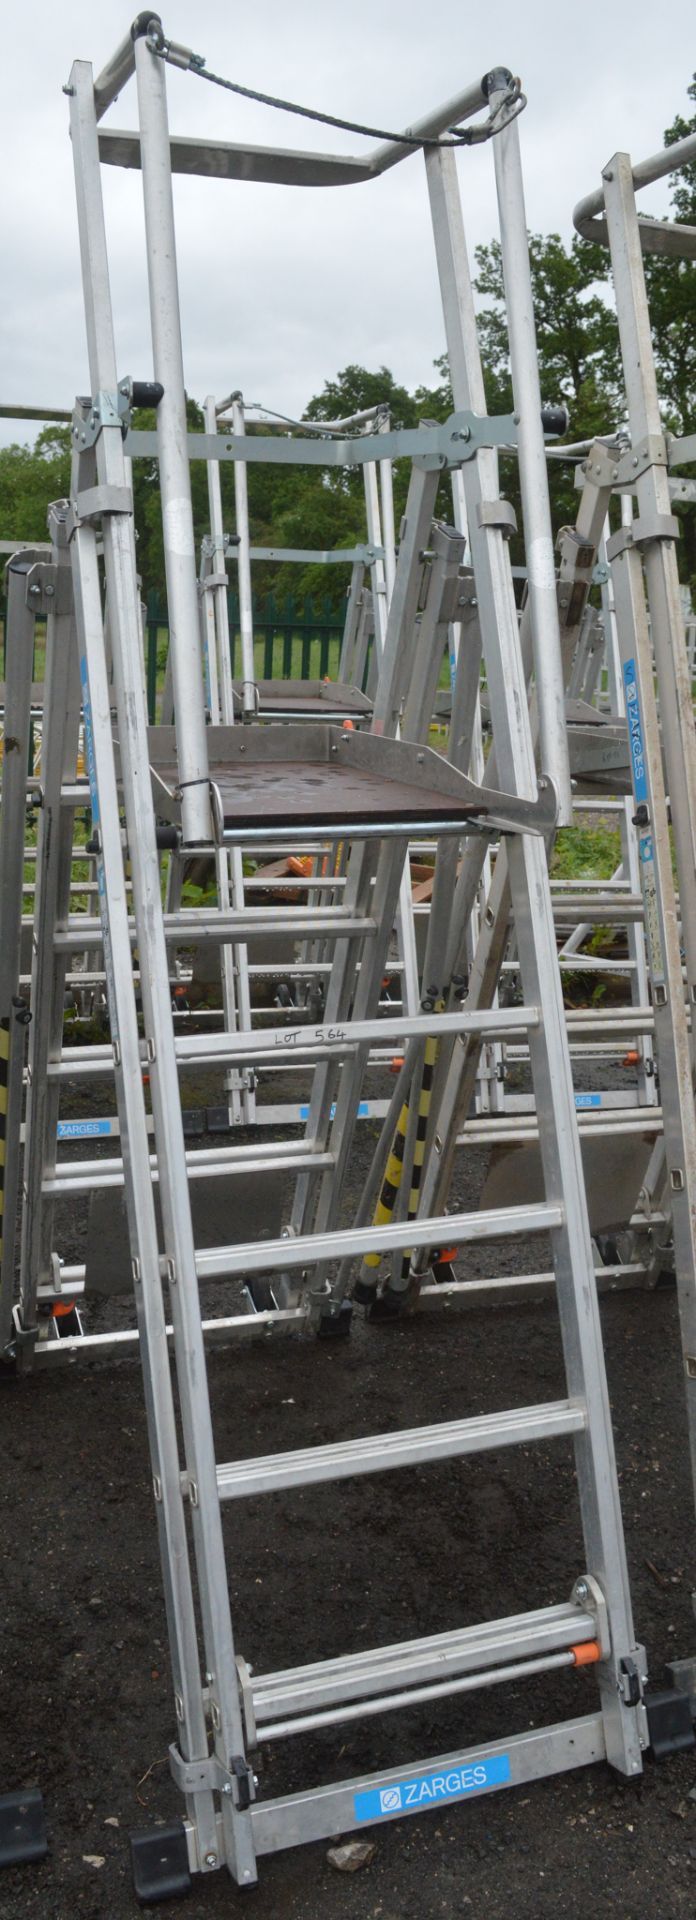 Zarges aluminium podium ladder A844589 - Image 2 of 2